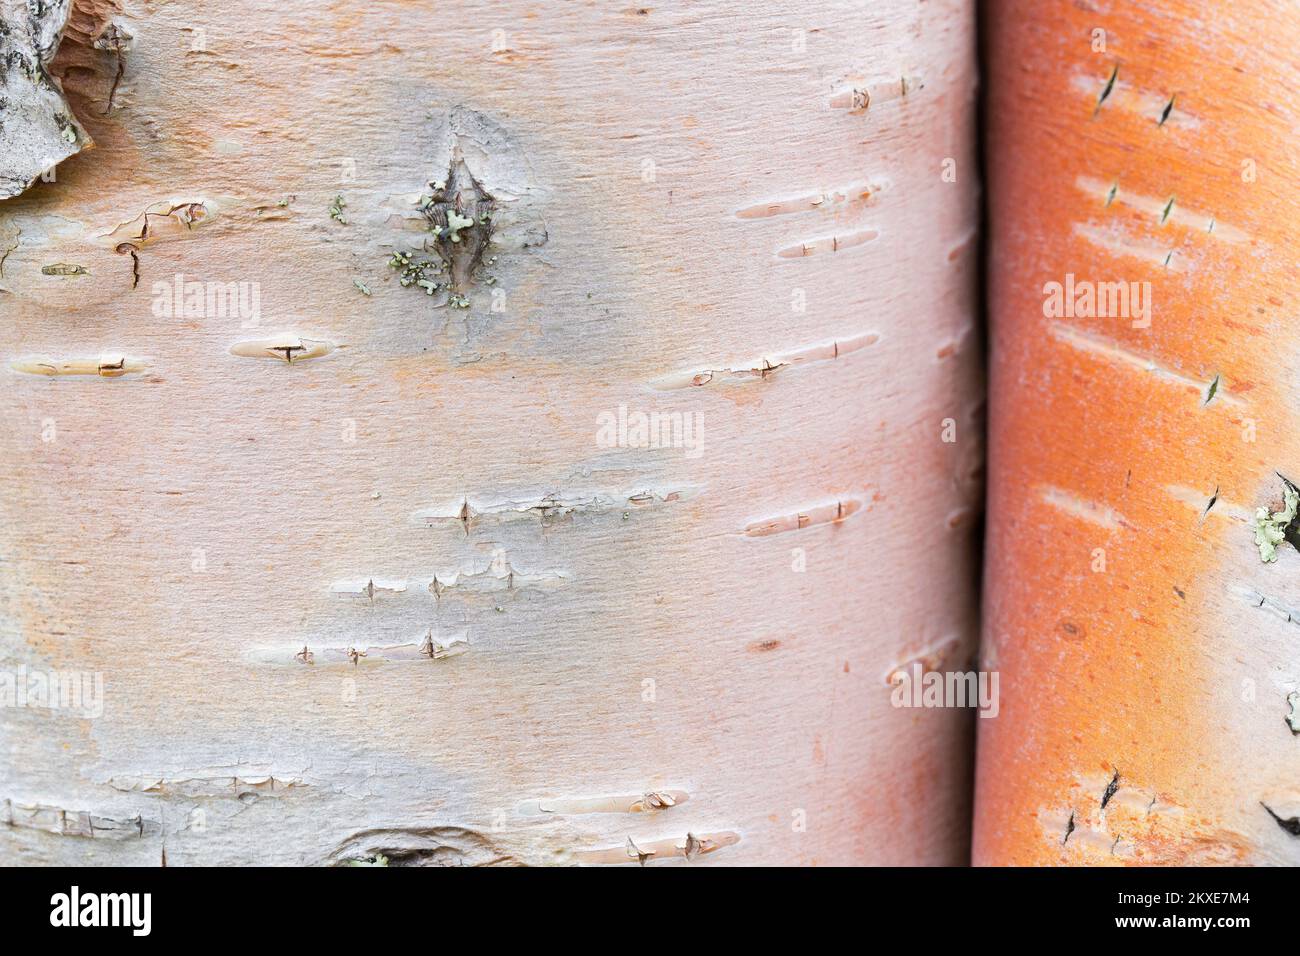 Silberbirke / Warzbirke / Weiße Birke (Betula pendula / B. verrucosa) Baumstamm Nahaufnahme der geschälten Rinde für medizinische Zwecke Stockfoto